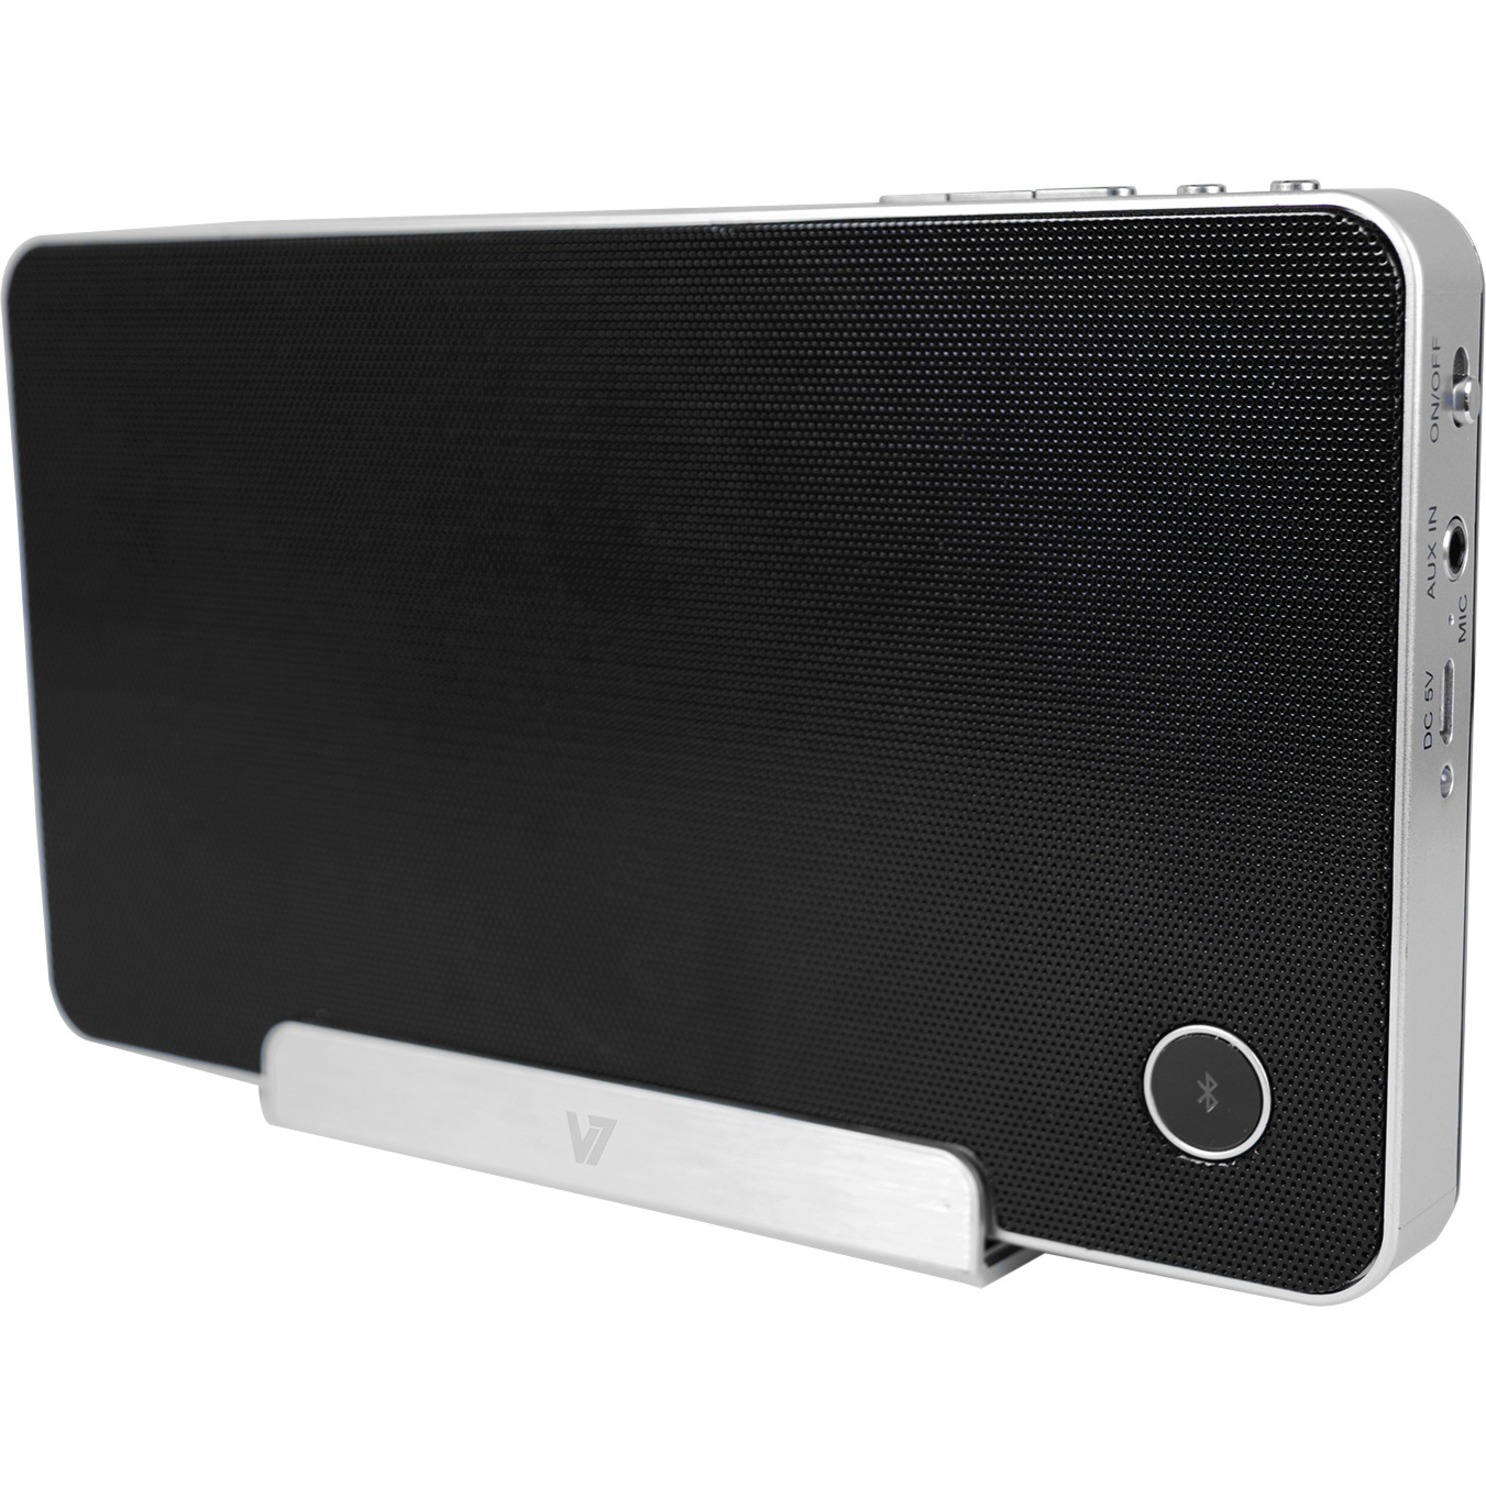 V7 Portable Bluetooth Speaker, Black, SP5500 - image 1 of 11